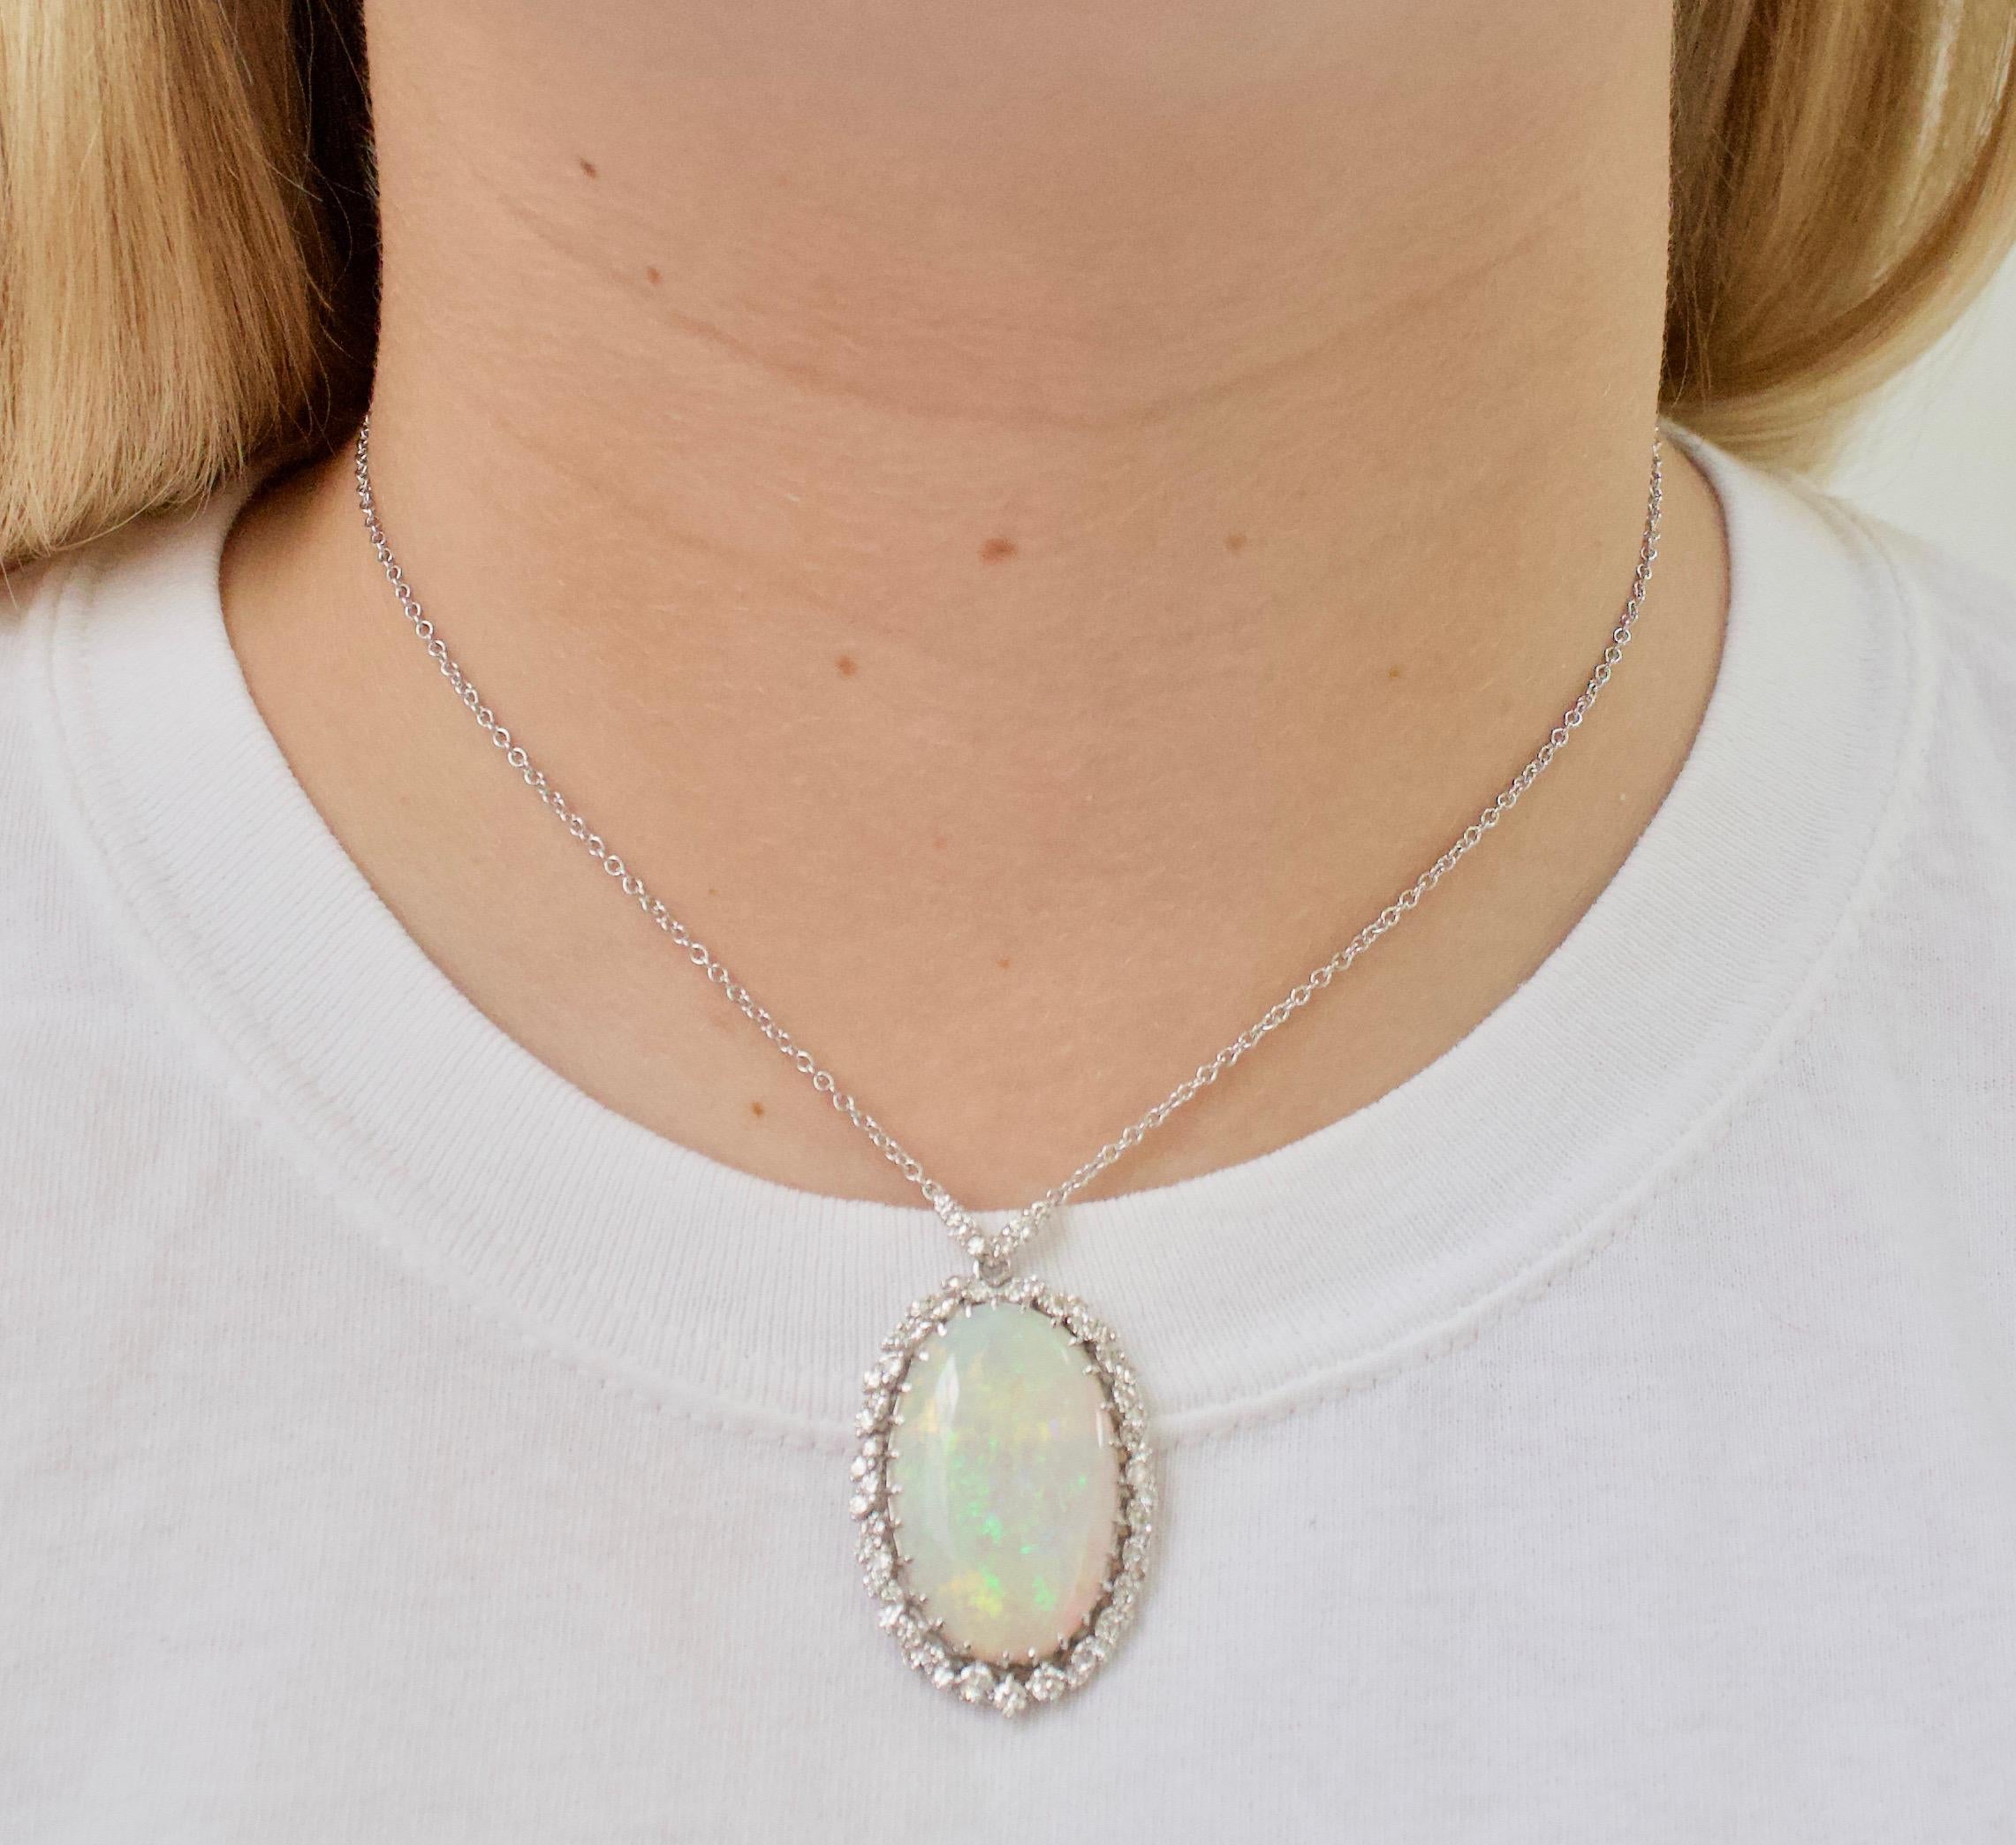 Opal und Diamant Vintage Halskette  in 18k Gold CIRCA 1960er Jahre
Aus dem Nachlass einer Familie in Los Angeles erworben
Verfügt über eine schöne 14,00 Karat (ca.) Natural Opal. Transluzent mit grünen, blauen und gelben Farbspielen.  
57 runde